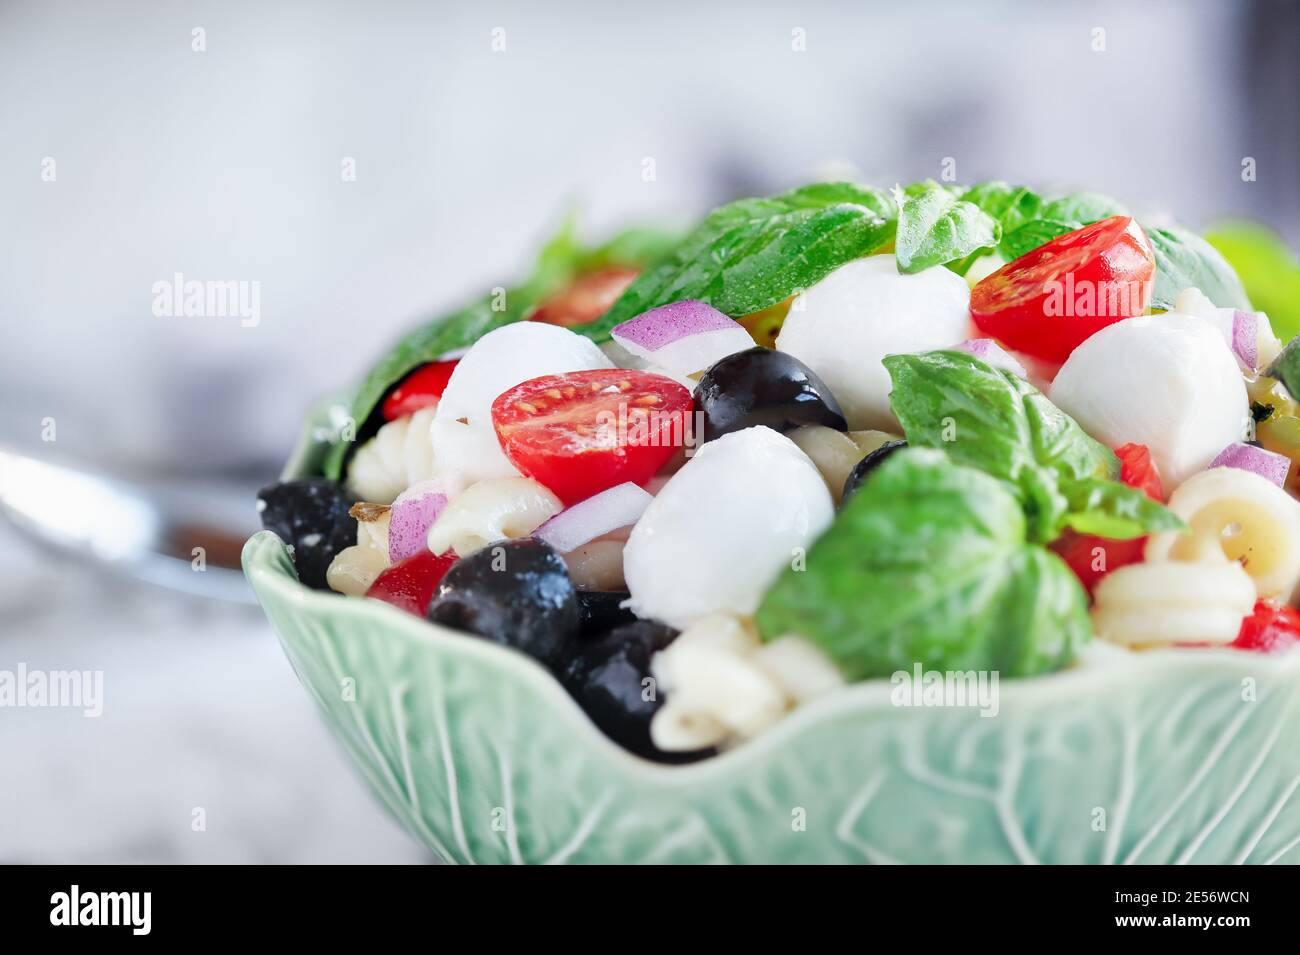 Italienischer Nudelsalat mit frischen Tomaten, schwarzen Oliven, roten Zwiebel Mozzarella Käsebällchen, Basilikum und einem Olivenöl-Dressing. Extrem selektiver Fokus wi Stockfoto